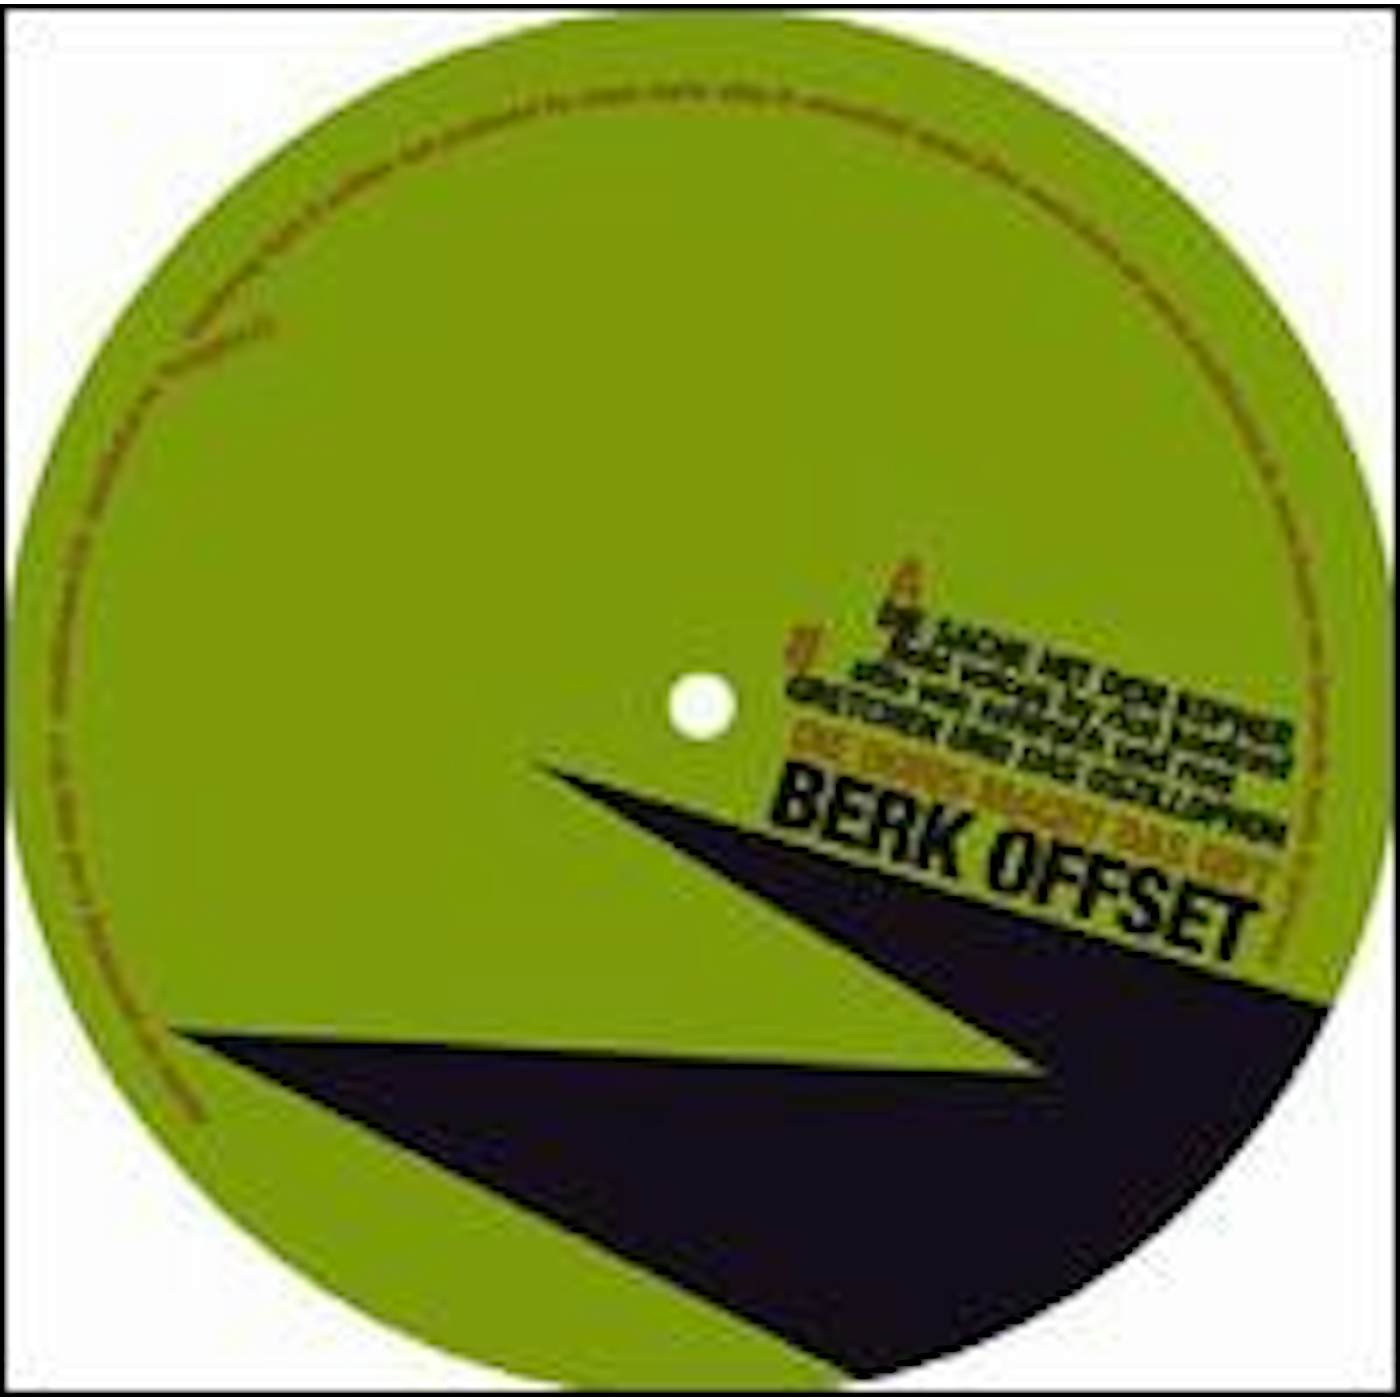 Berk Offset Die Doris macht das Gift Vinyl Record